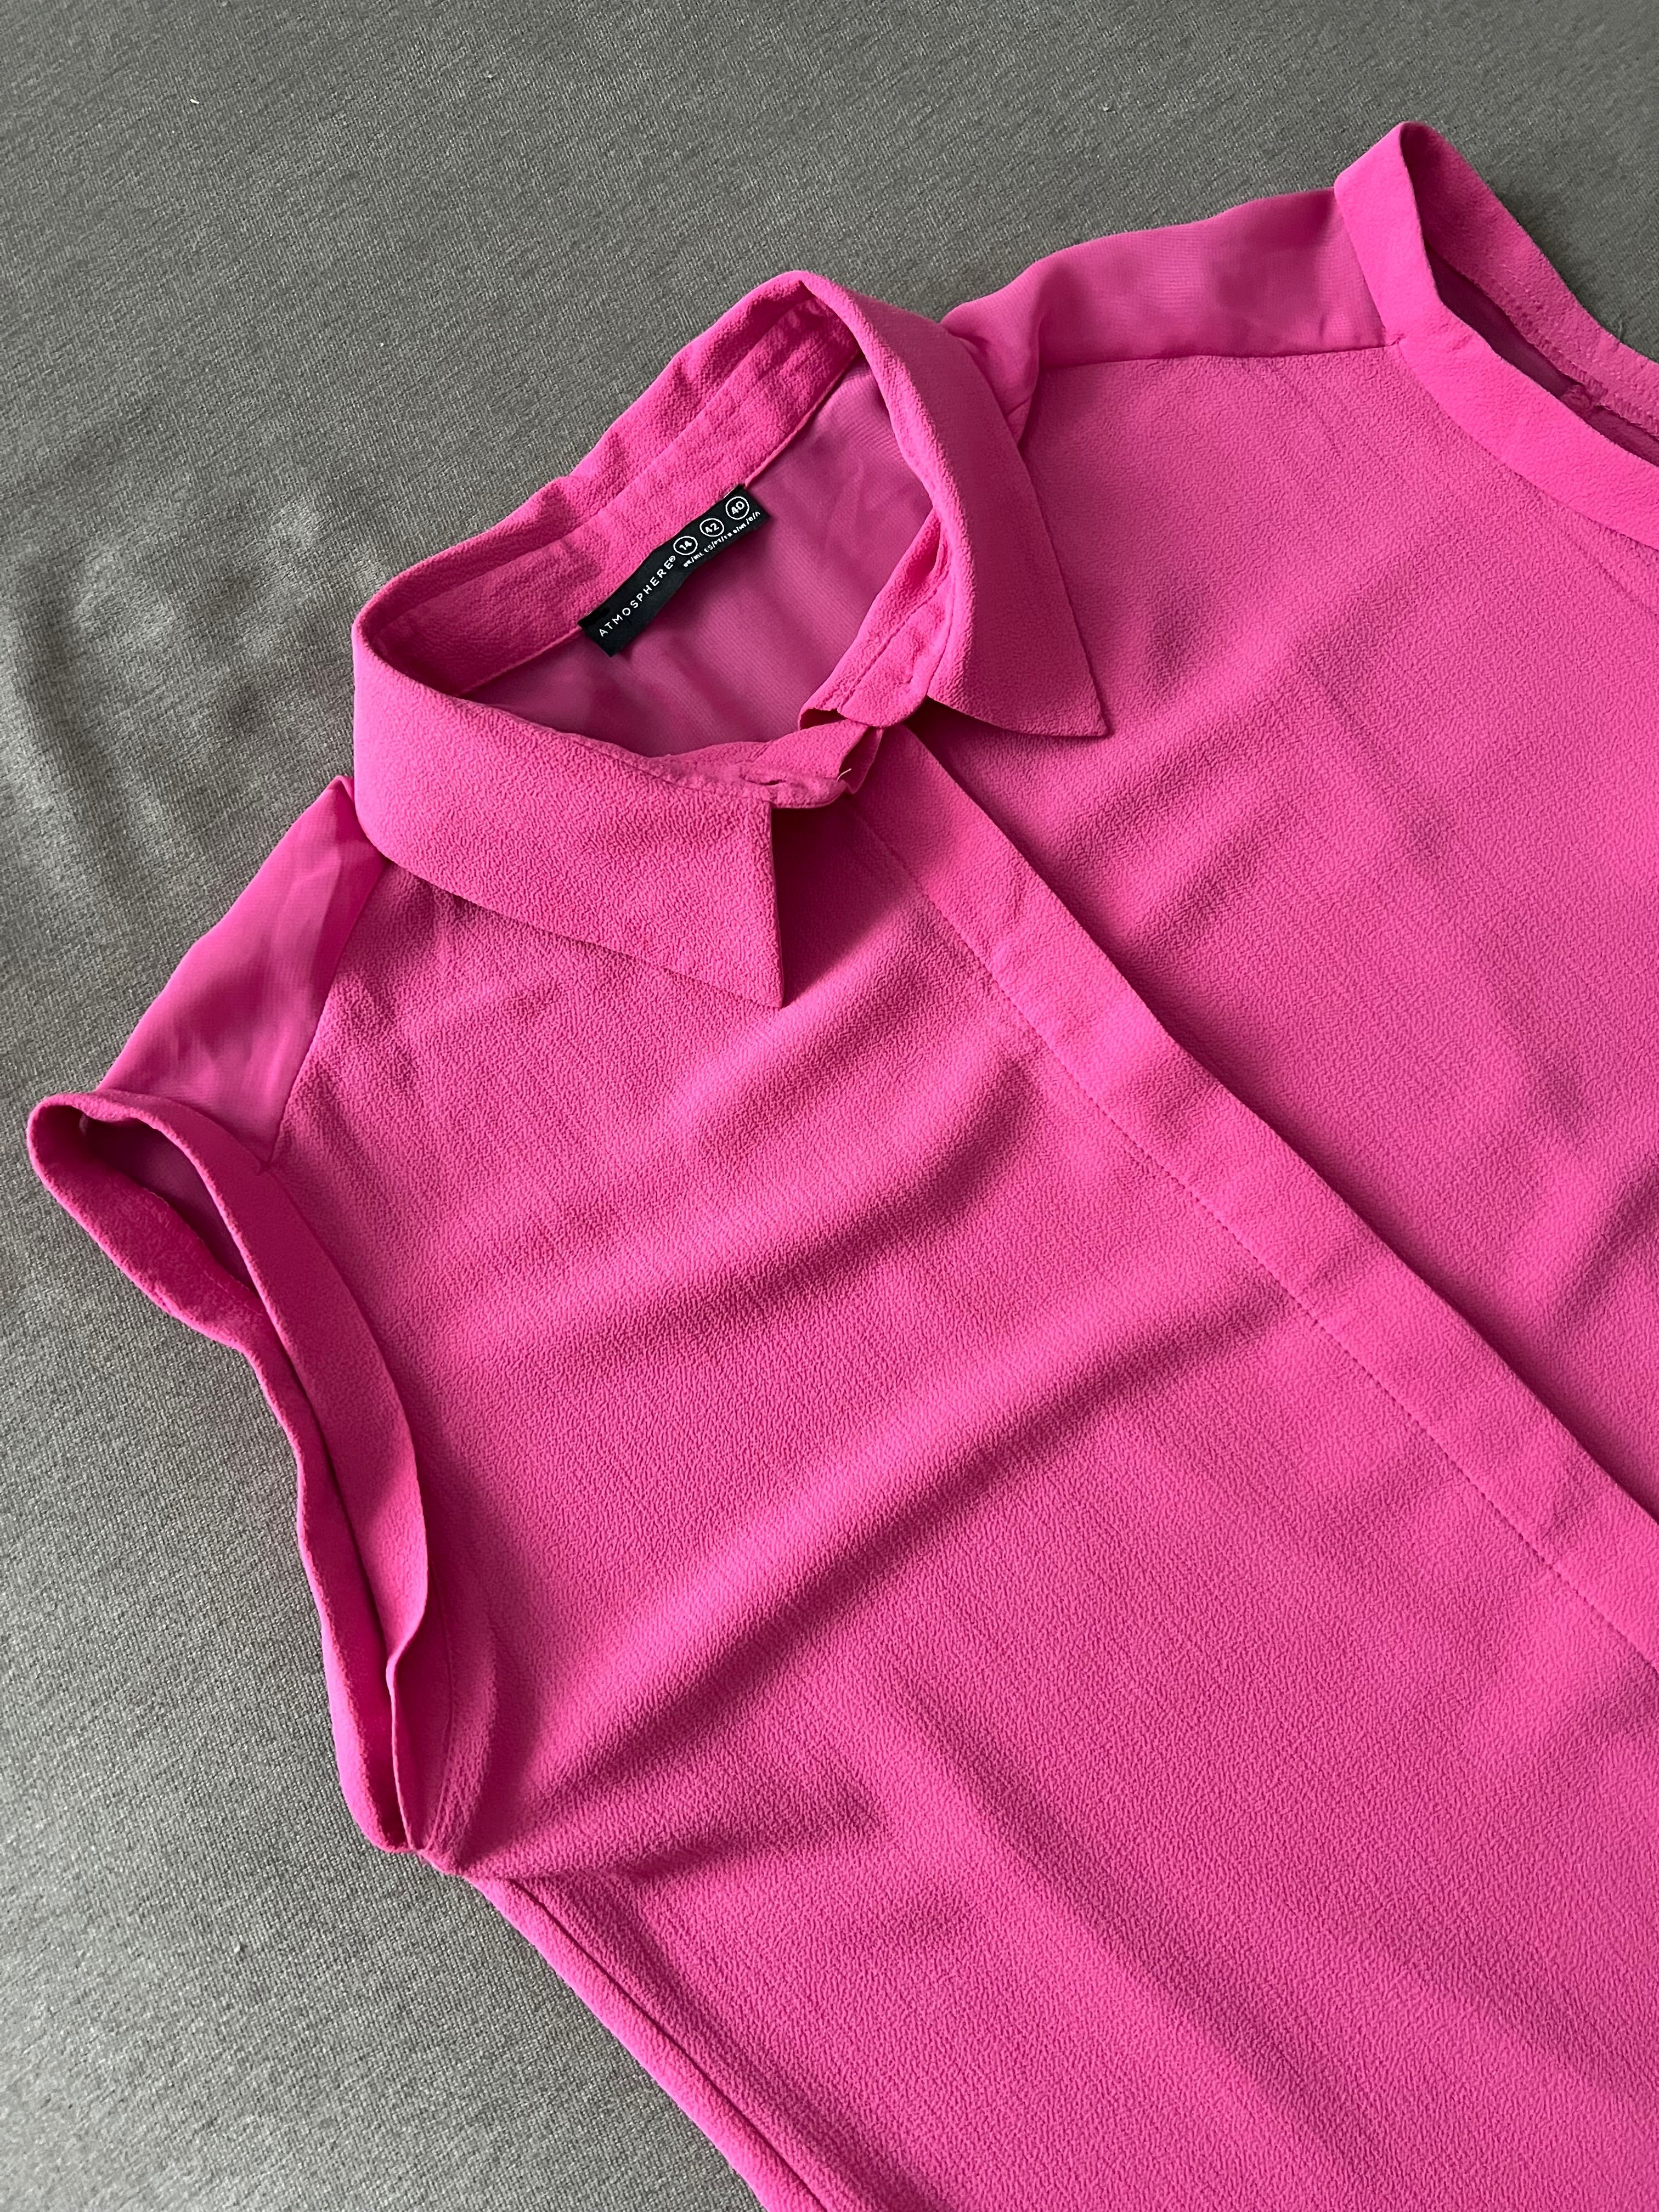 Różowa koszula XL /42